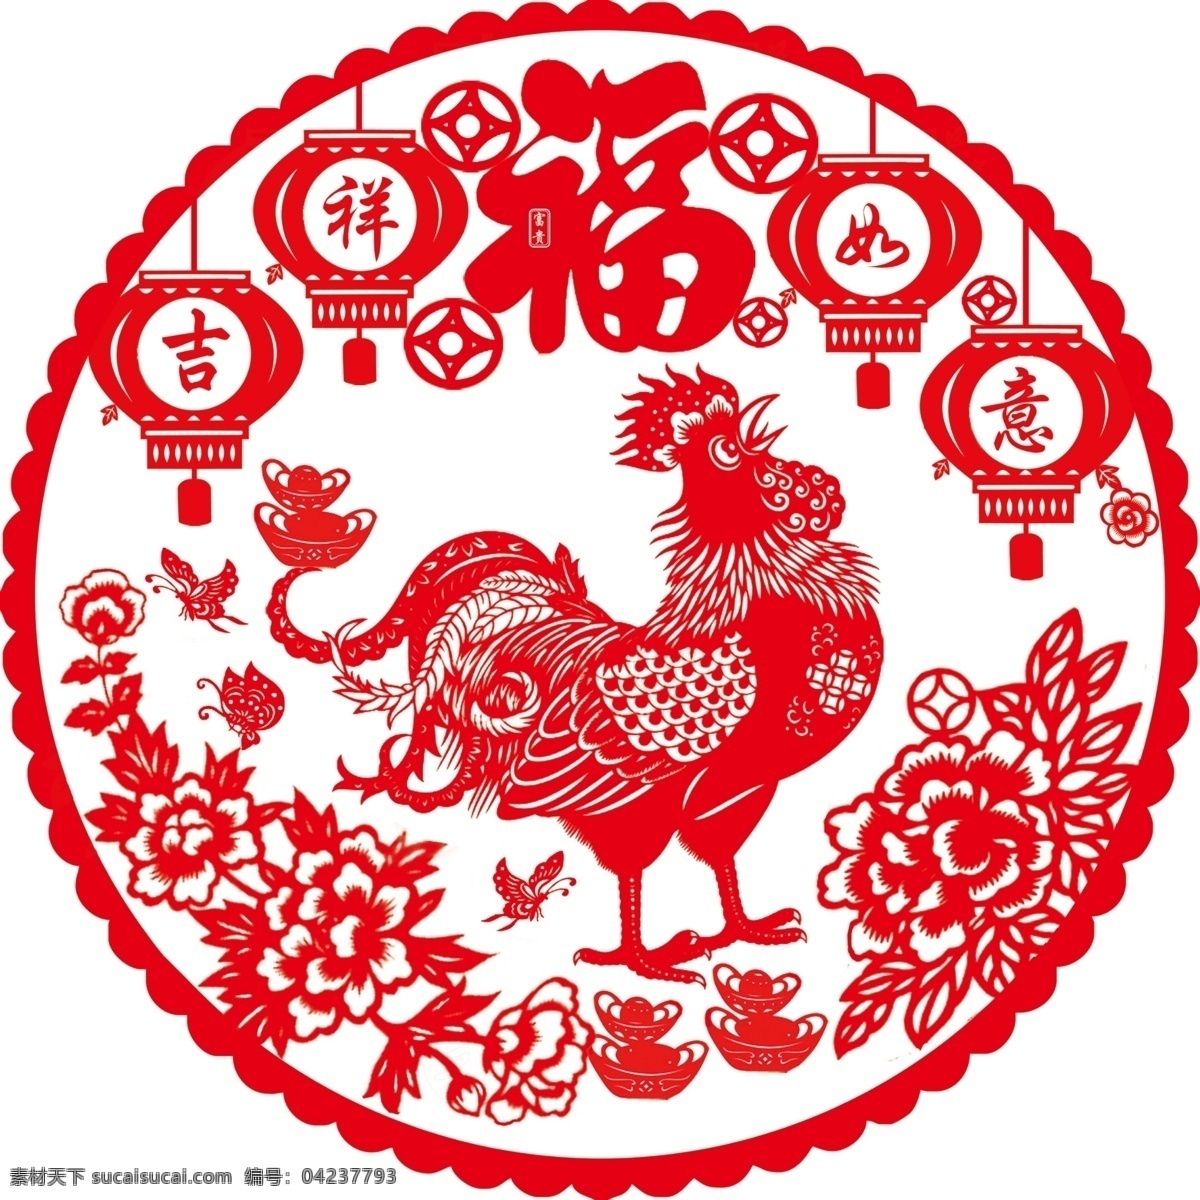 剪纸鸡 鸡 动物 生肖 家禽 线条 矢量 传统 民俗 装饰 窗花 插画 十二生肖剪纸 分层